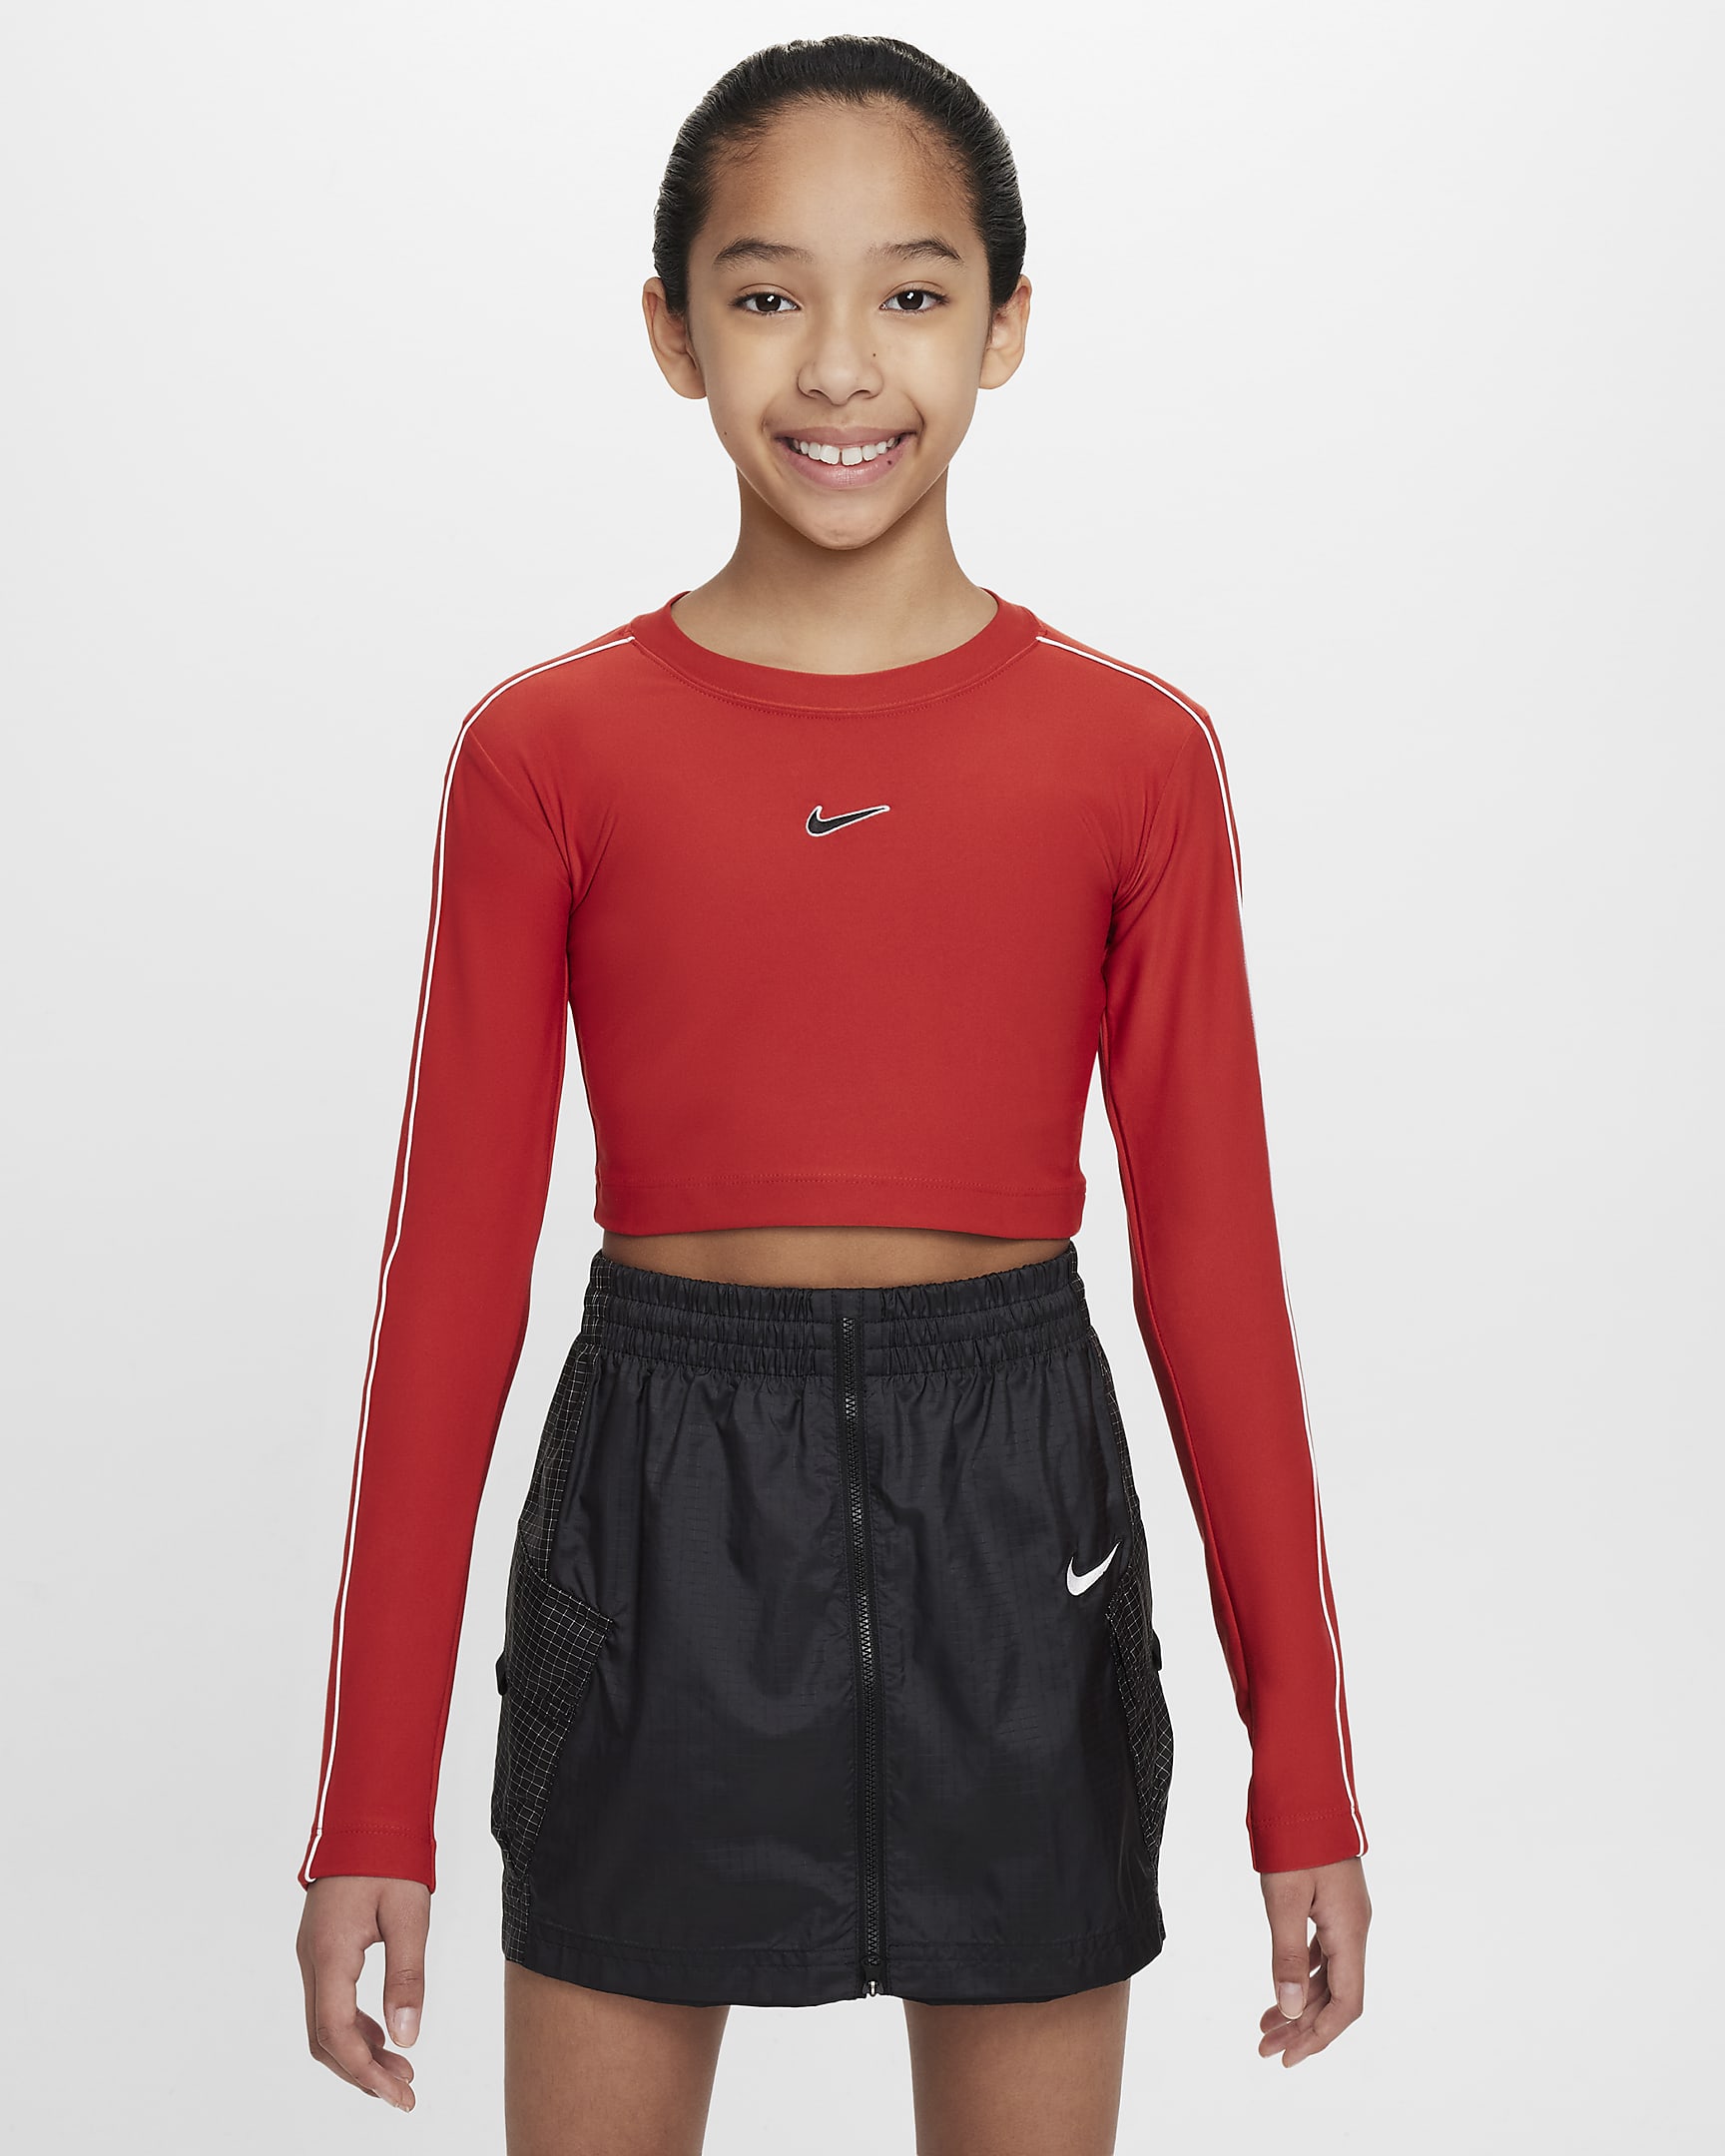 Långärmad kort tröja Nike Sportswear för ungdom (tjejer) - Mystic Red/Vit